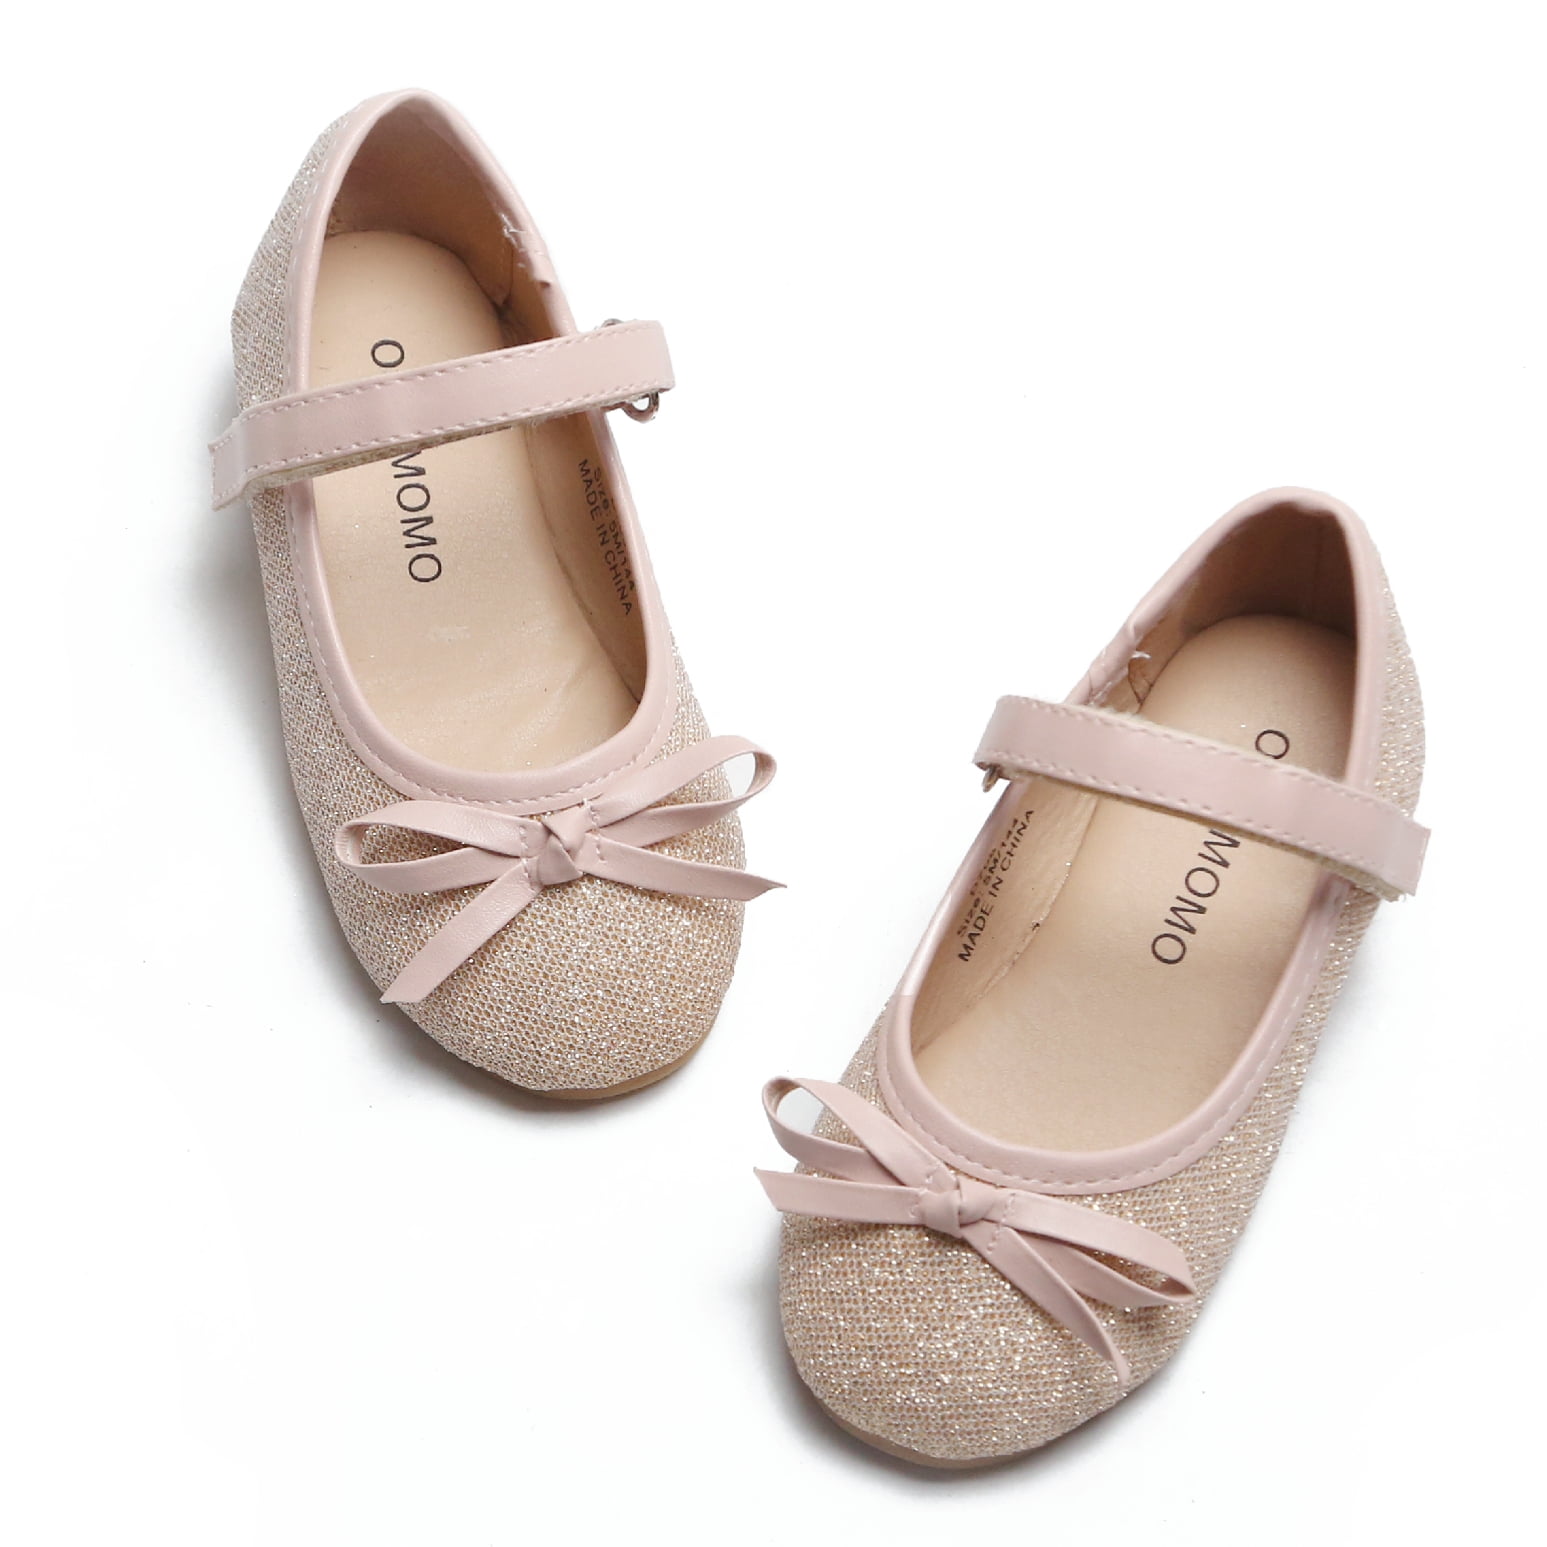 Toddler/Little Girls Mary Jane Ballerina Flats Shoes - Walmart.com